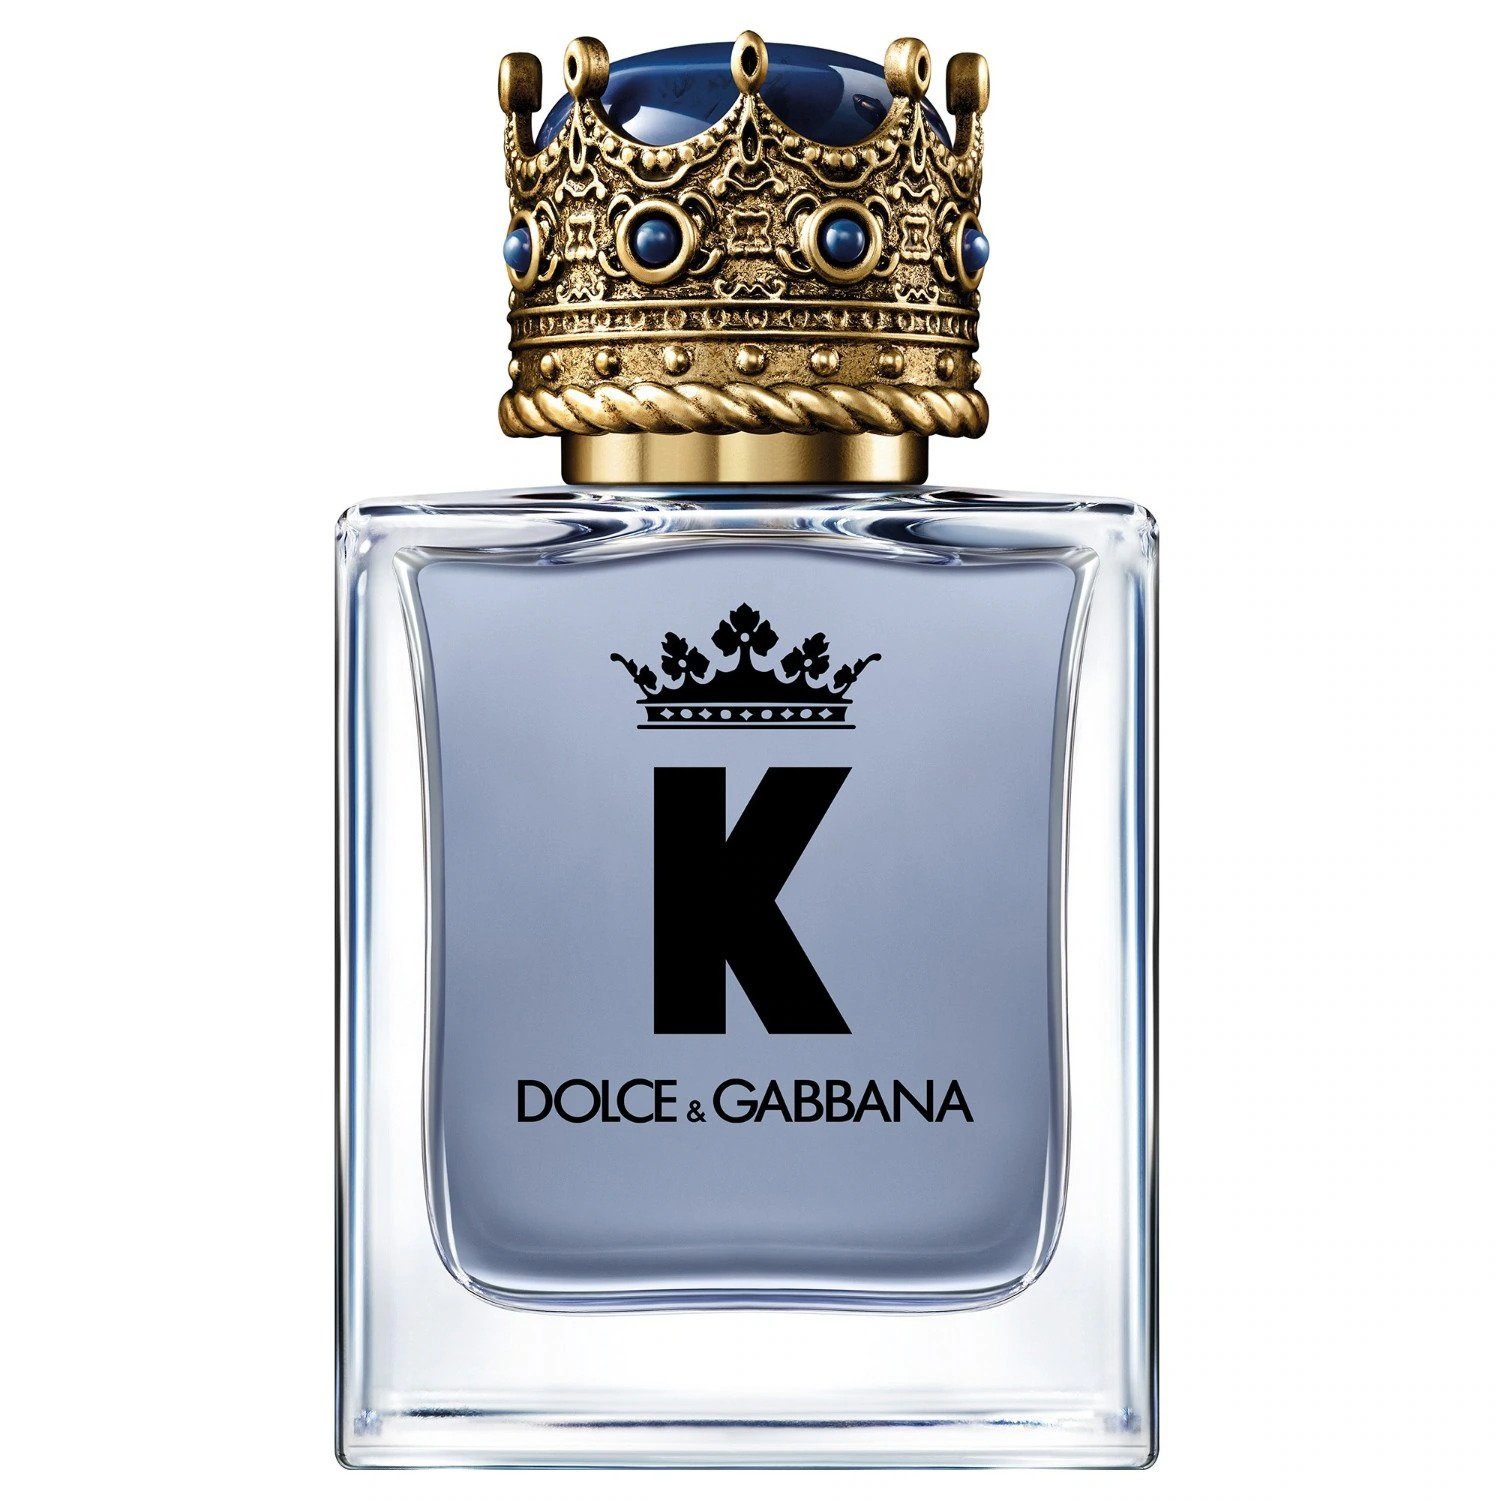 DOLCE & GABBANA Eau de Parfum 50 ml K by Dolce&Gabbana: Moderne Männlichkeit in toskanischer, Frisch, würzig, holzig – der Duft eines modernen Königs